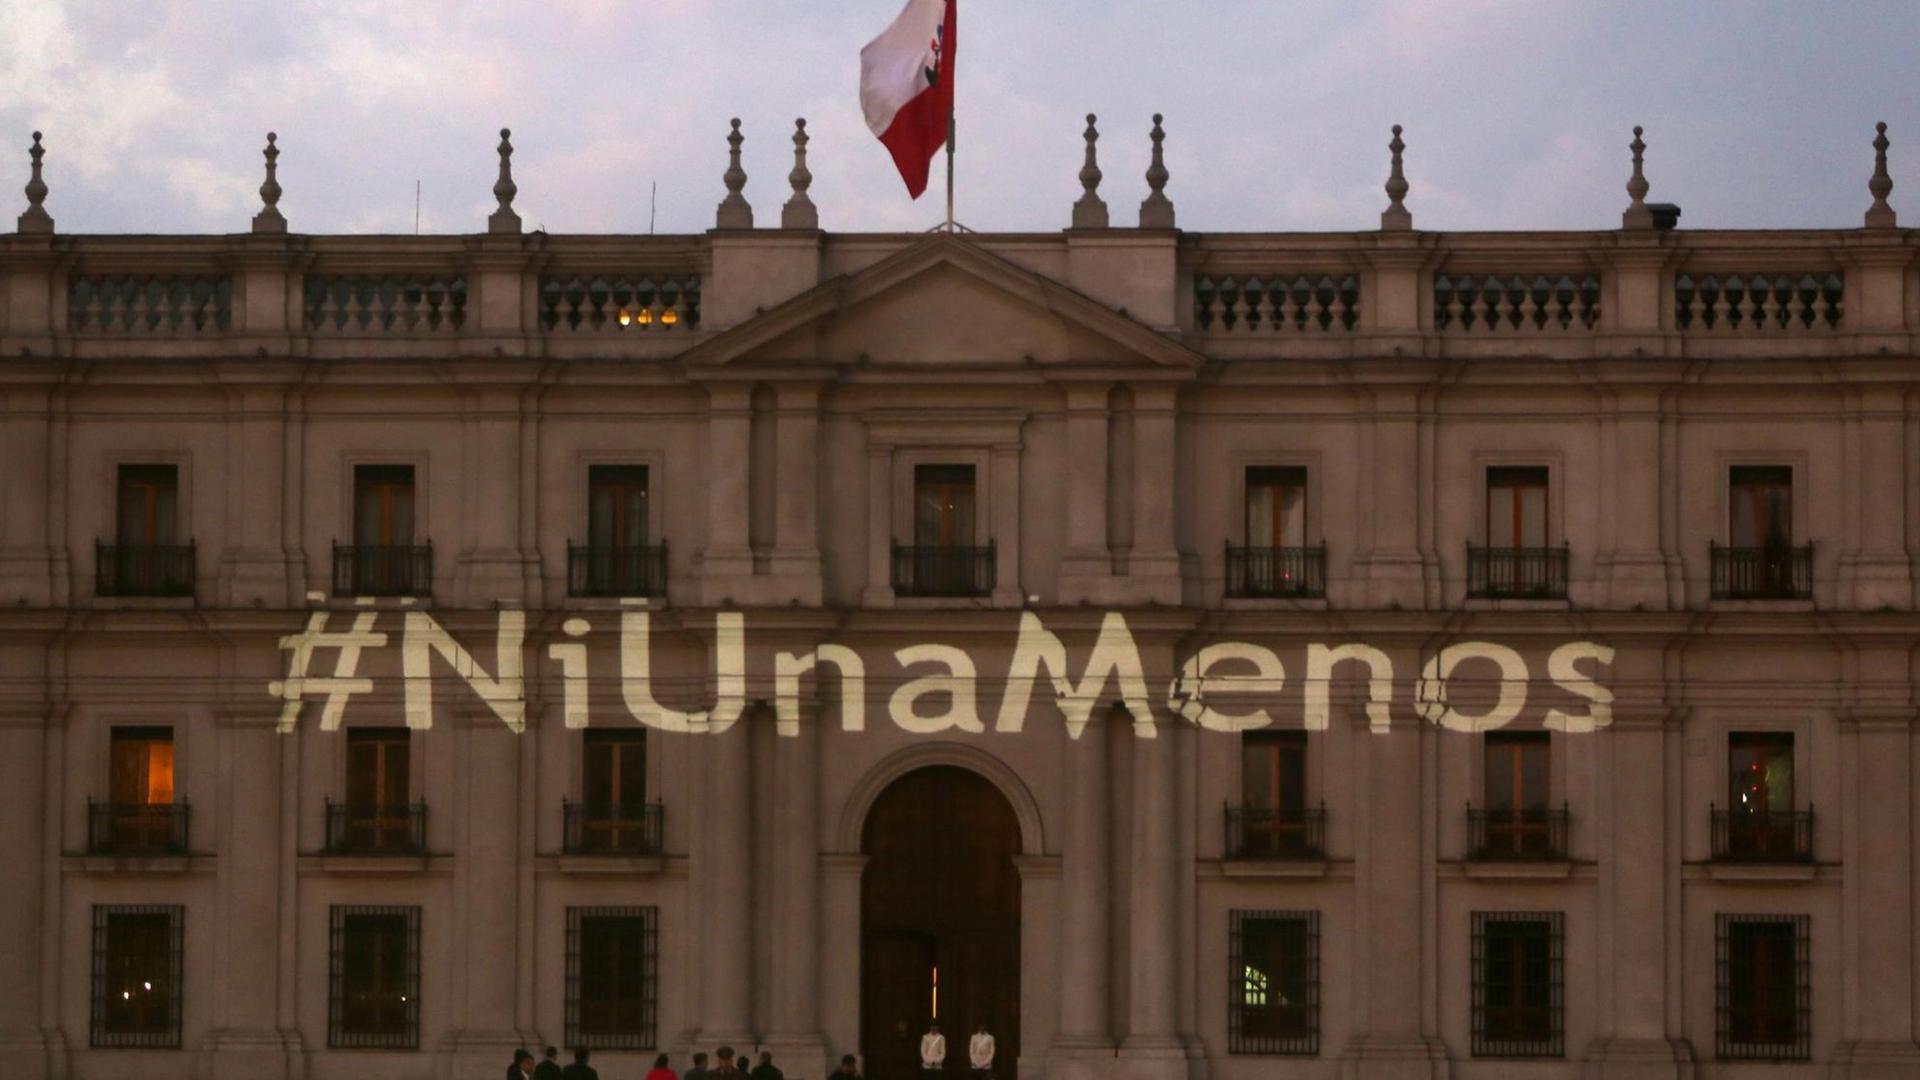 Das Protestmotto "#NiUnaMenos" projiziert auf dem chilenischen Präsidentenpalast